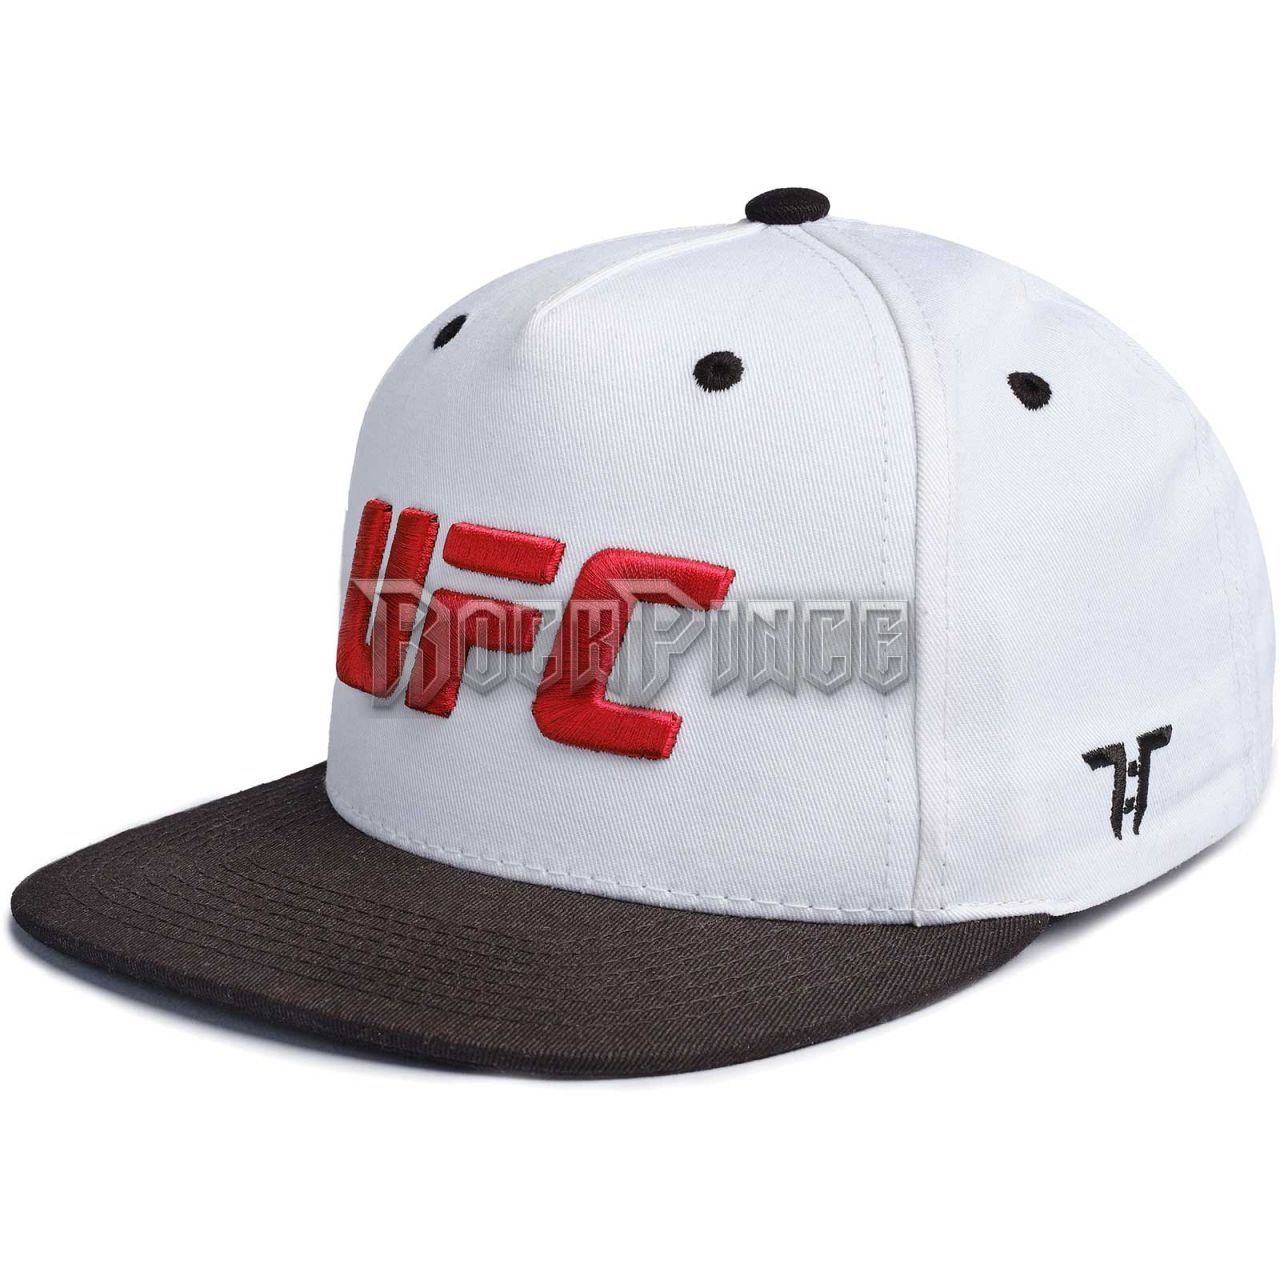 Tokyo Time - UFC Retro Sport Red Logo - snapback sapka - TOKYOSBCAP04RW